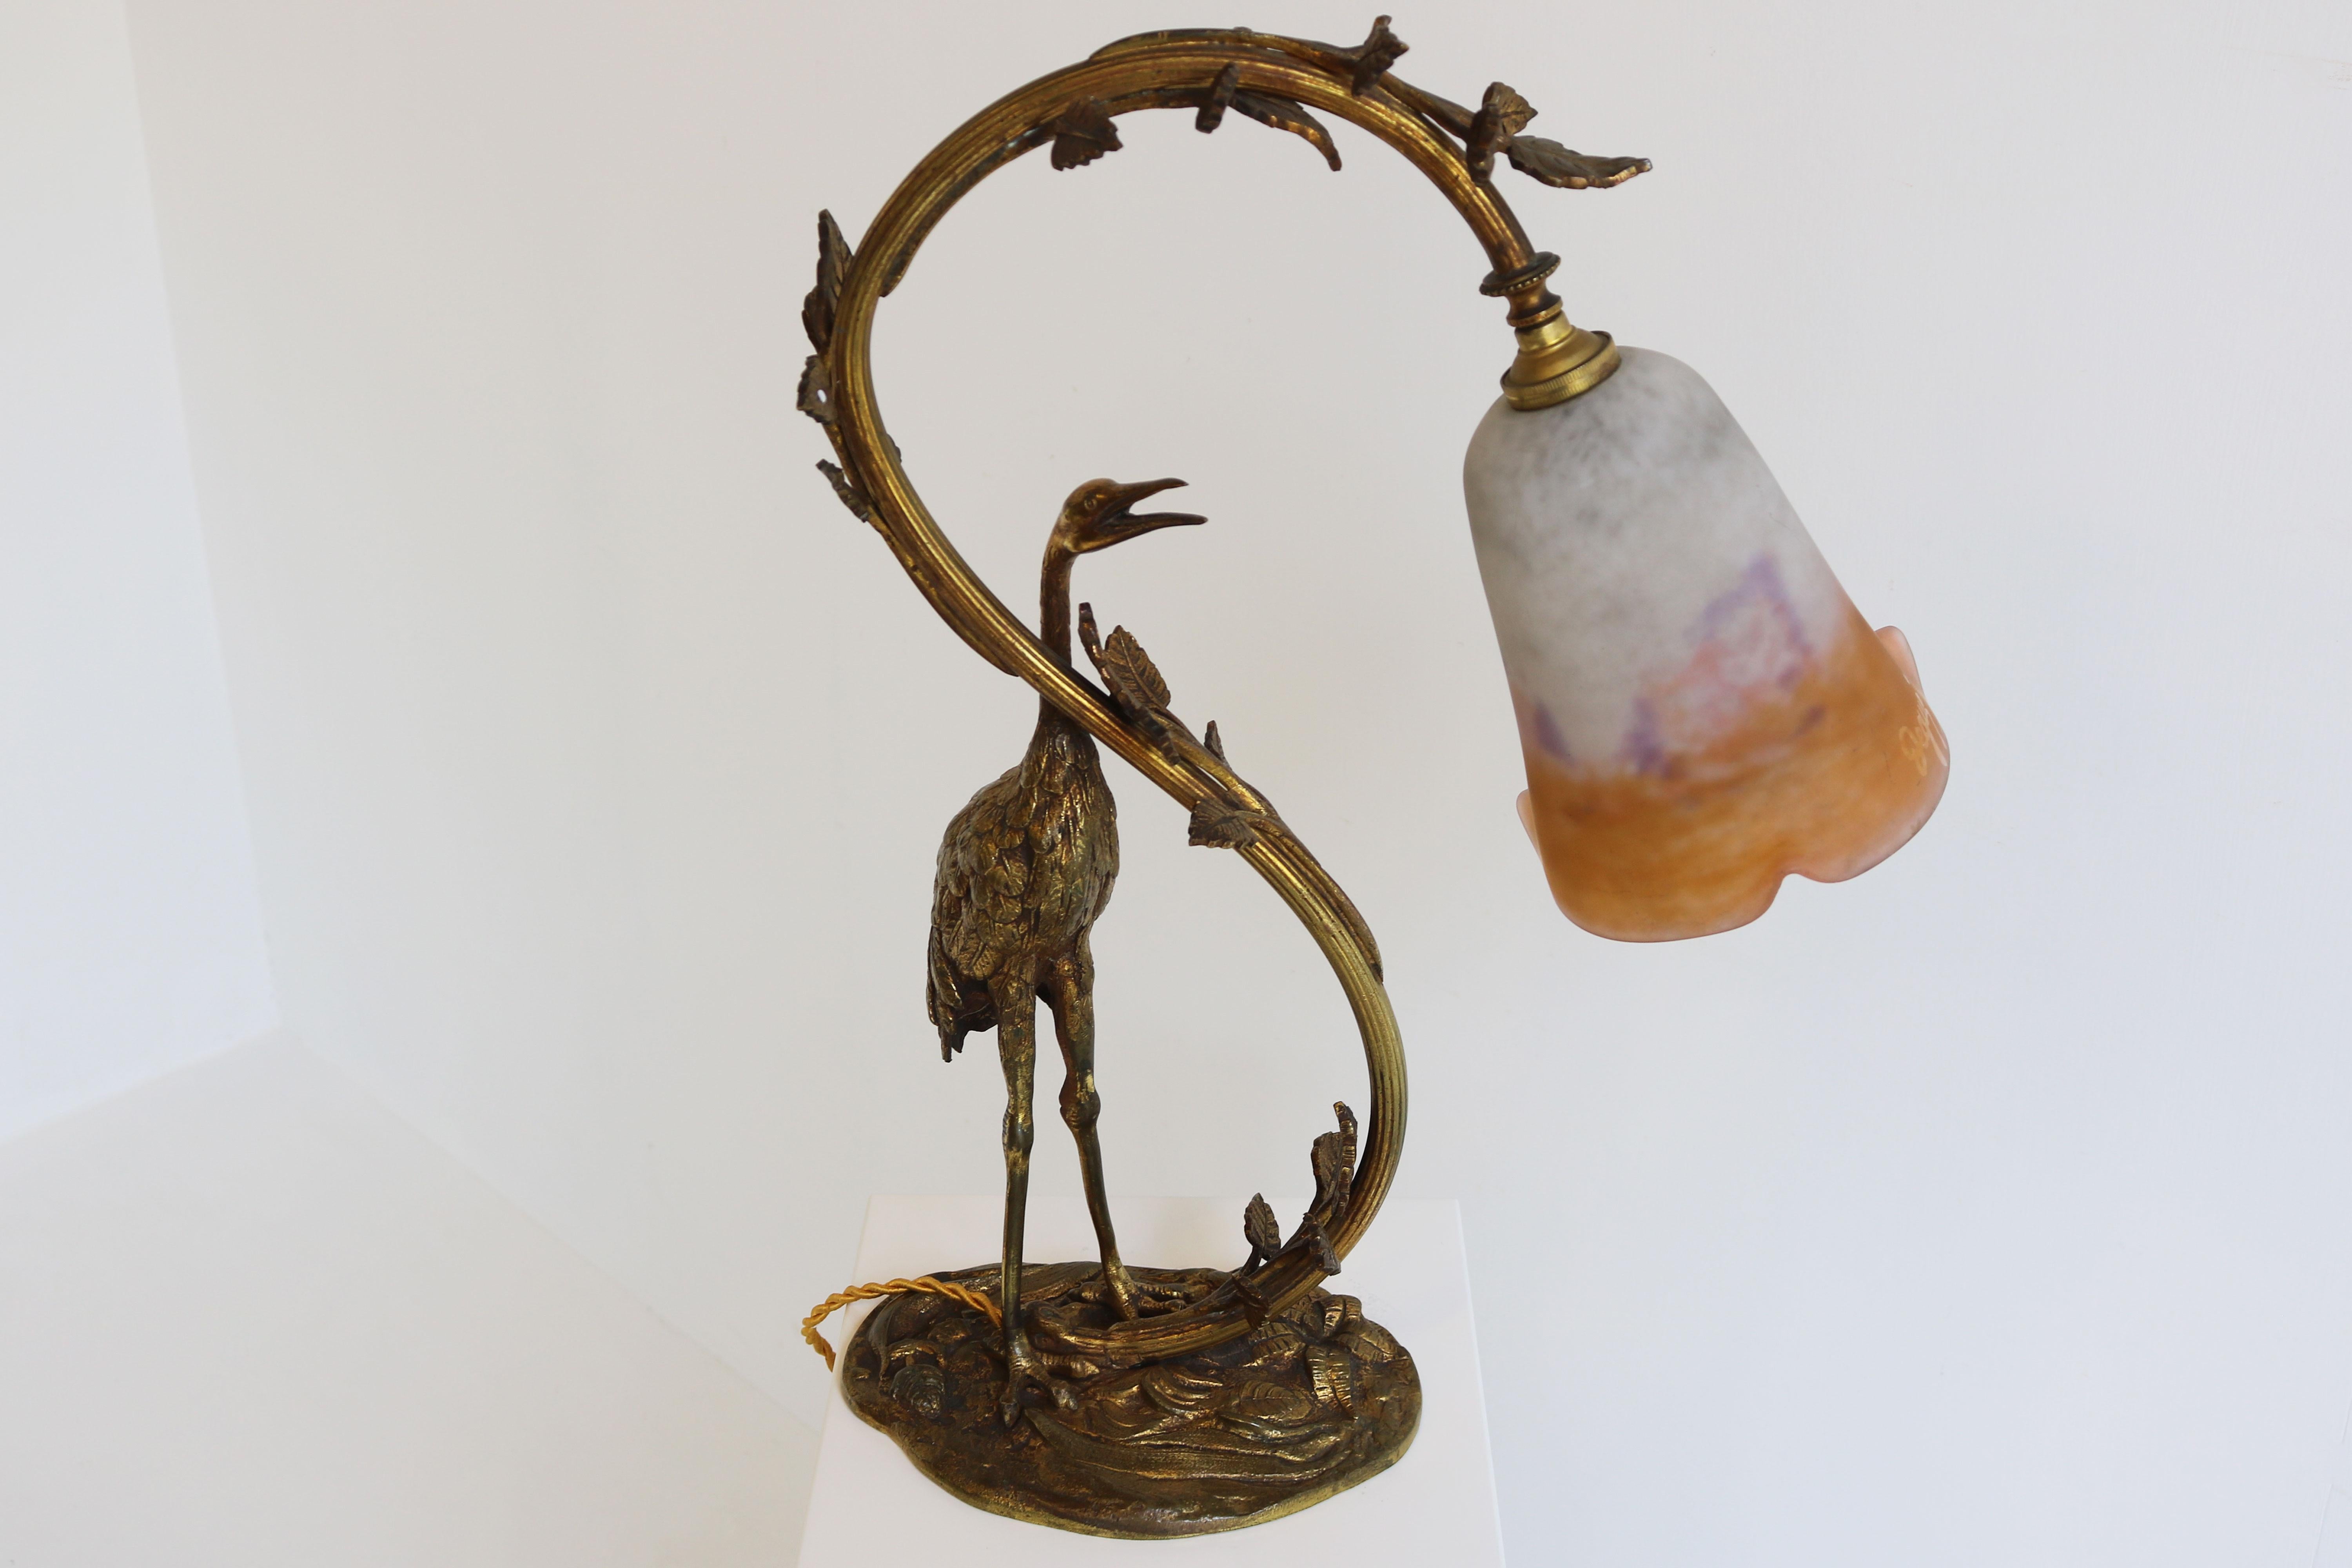 Antique French Art Nouveau Table Lamp Heron by Degue 1920 Pate De Verre Bronze  For Sale 8